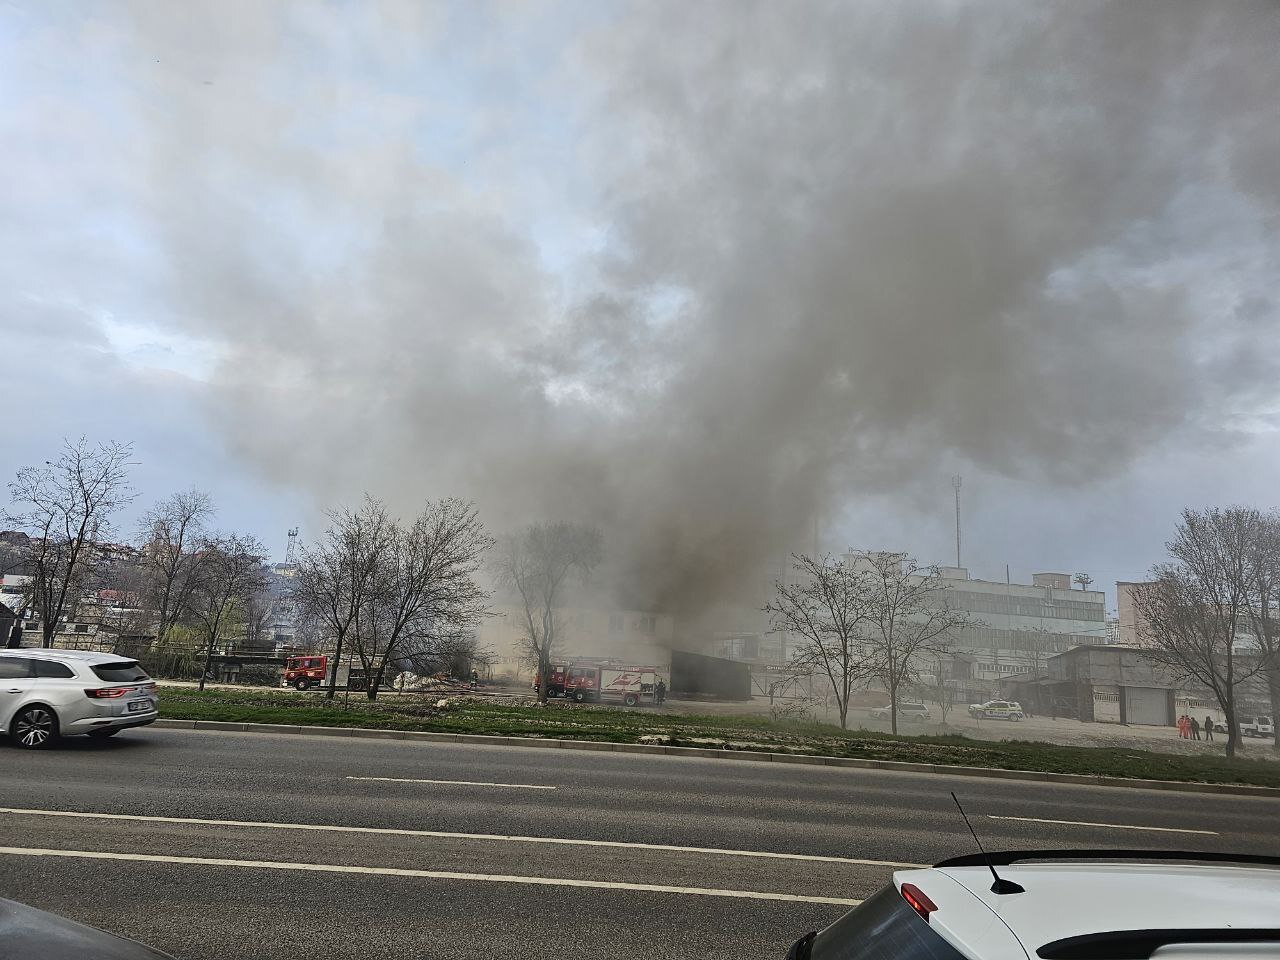 (ФОТО, ВИДЕО) В Кишиневе произошел пожар на складе. На месте происшествия работали 10 пожарных расчетов (обновлено)